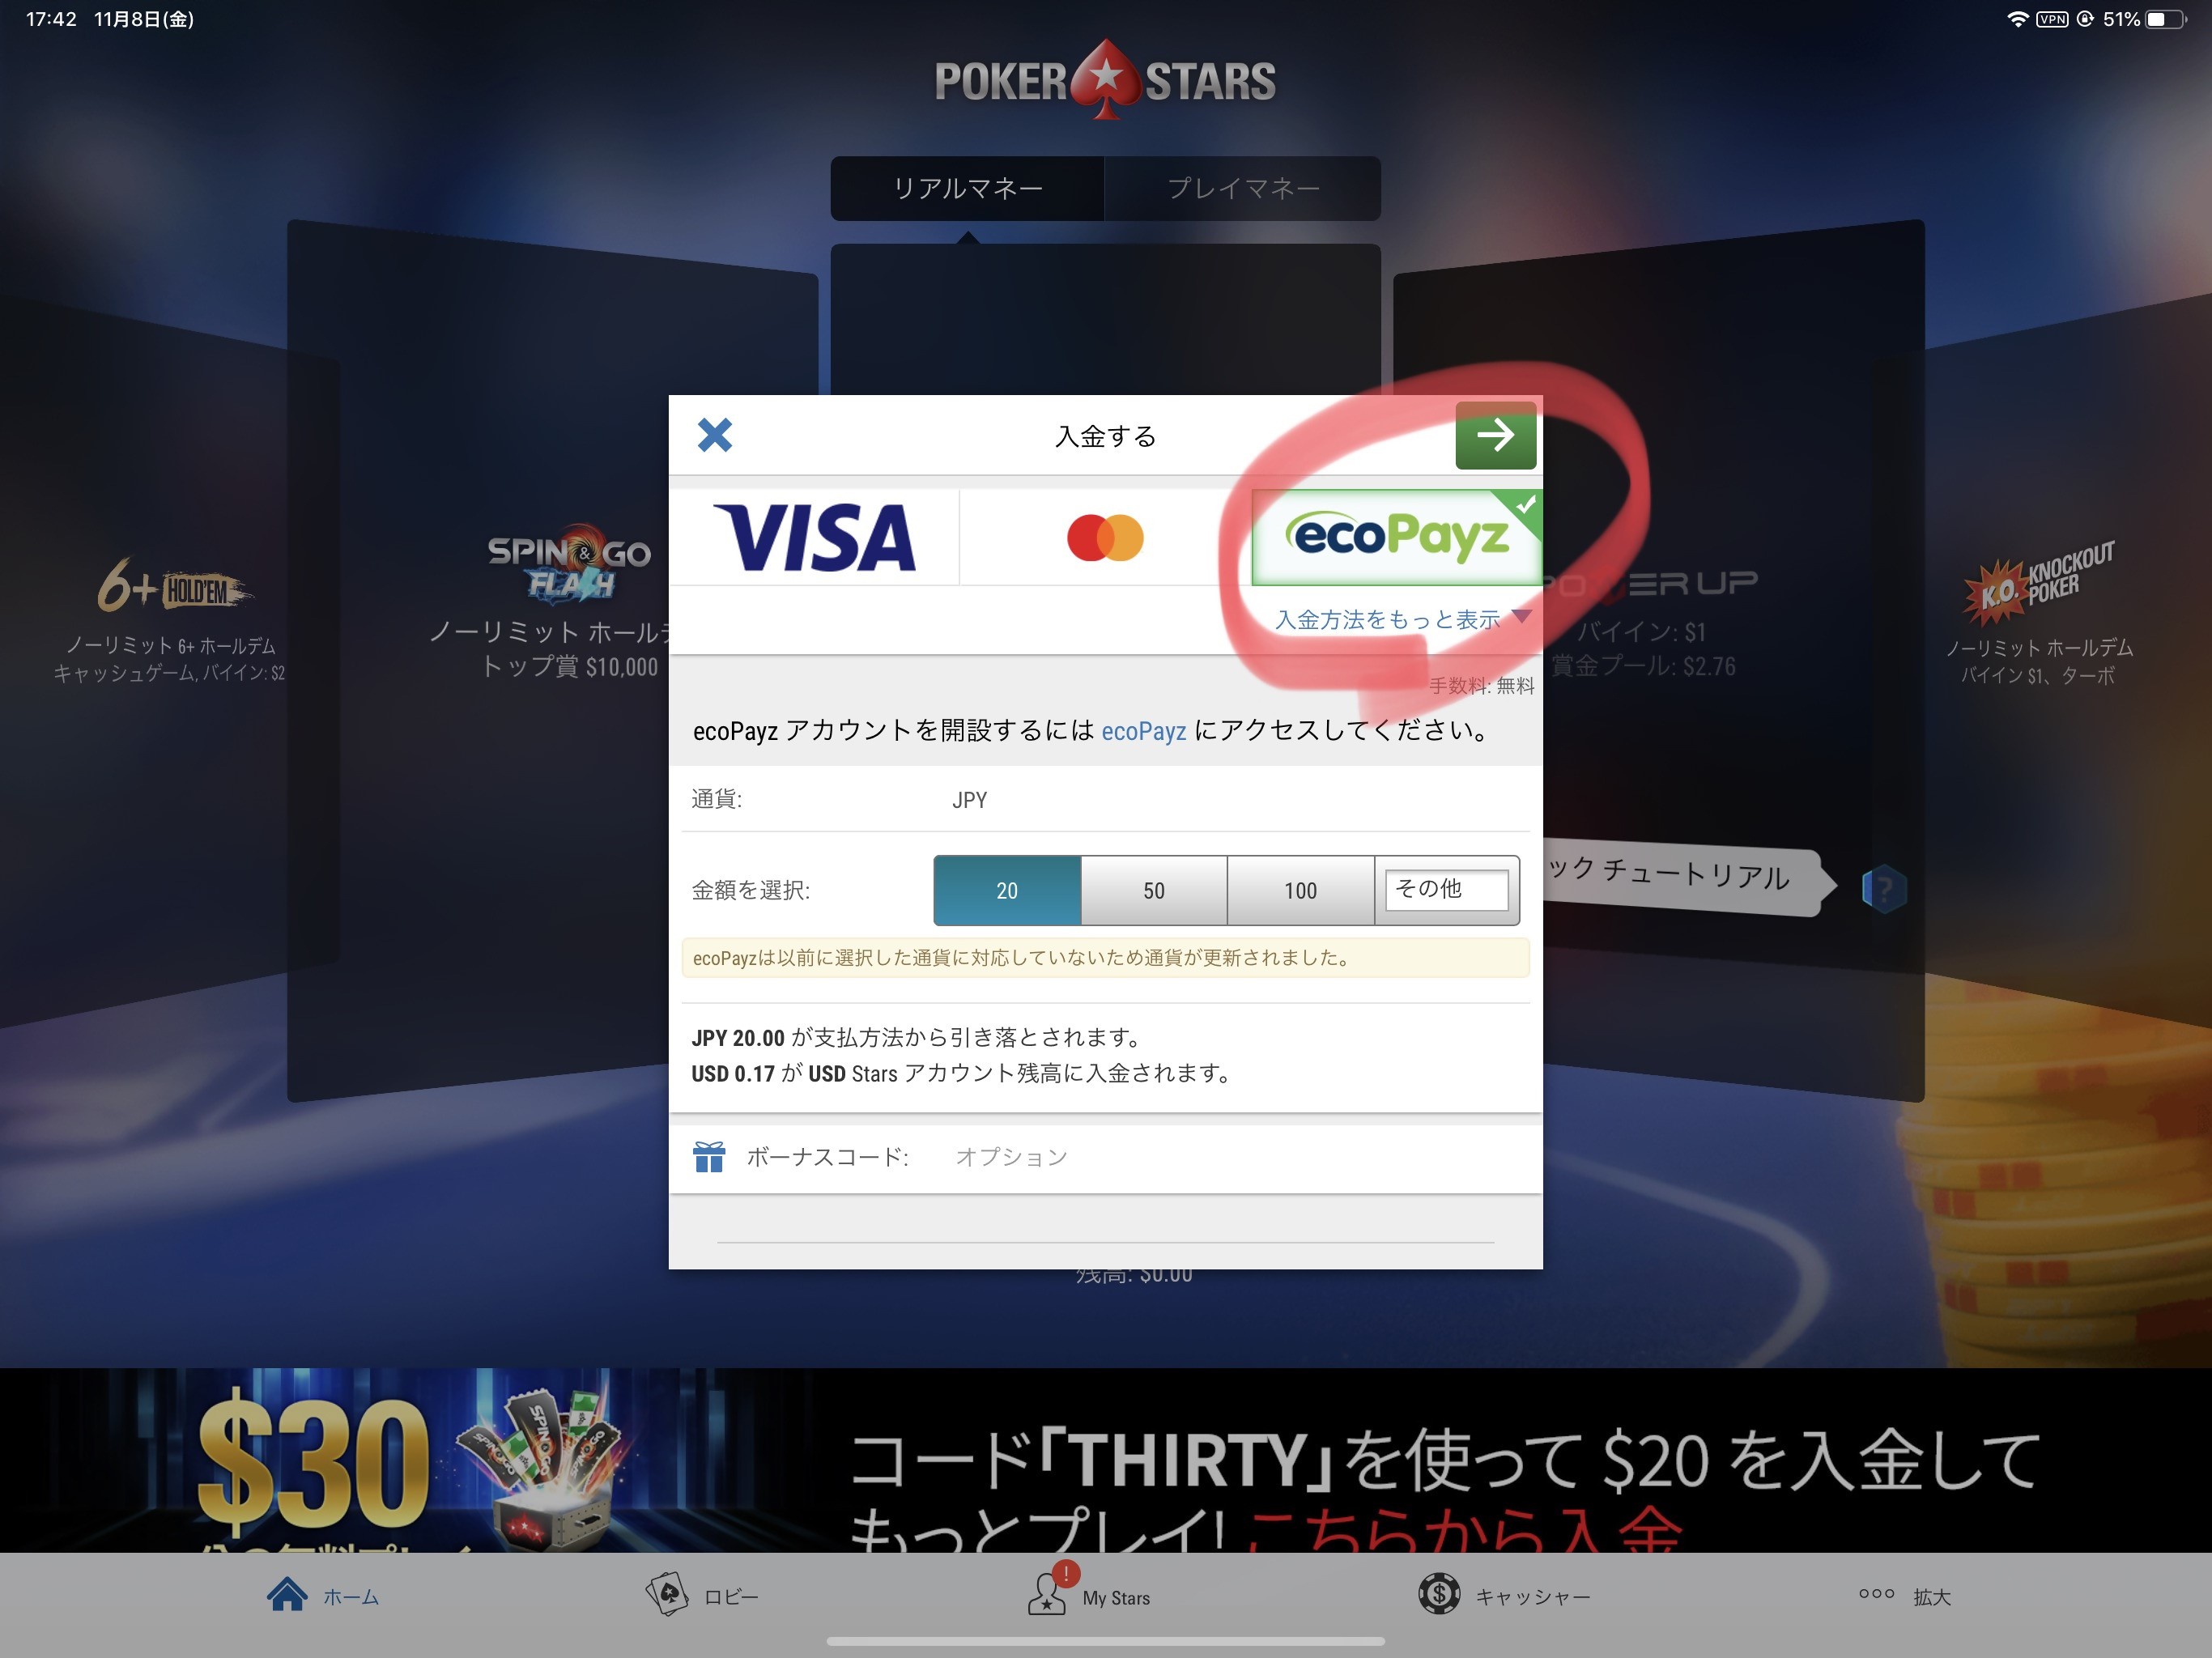 ecoPayzの口座に日本のクレジットカードで入金し